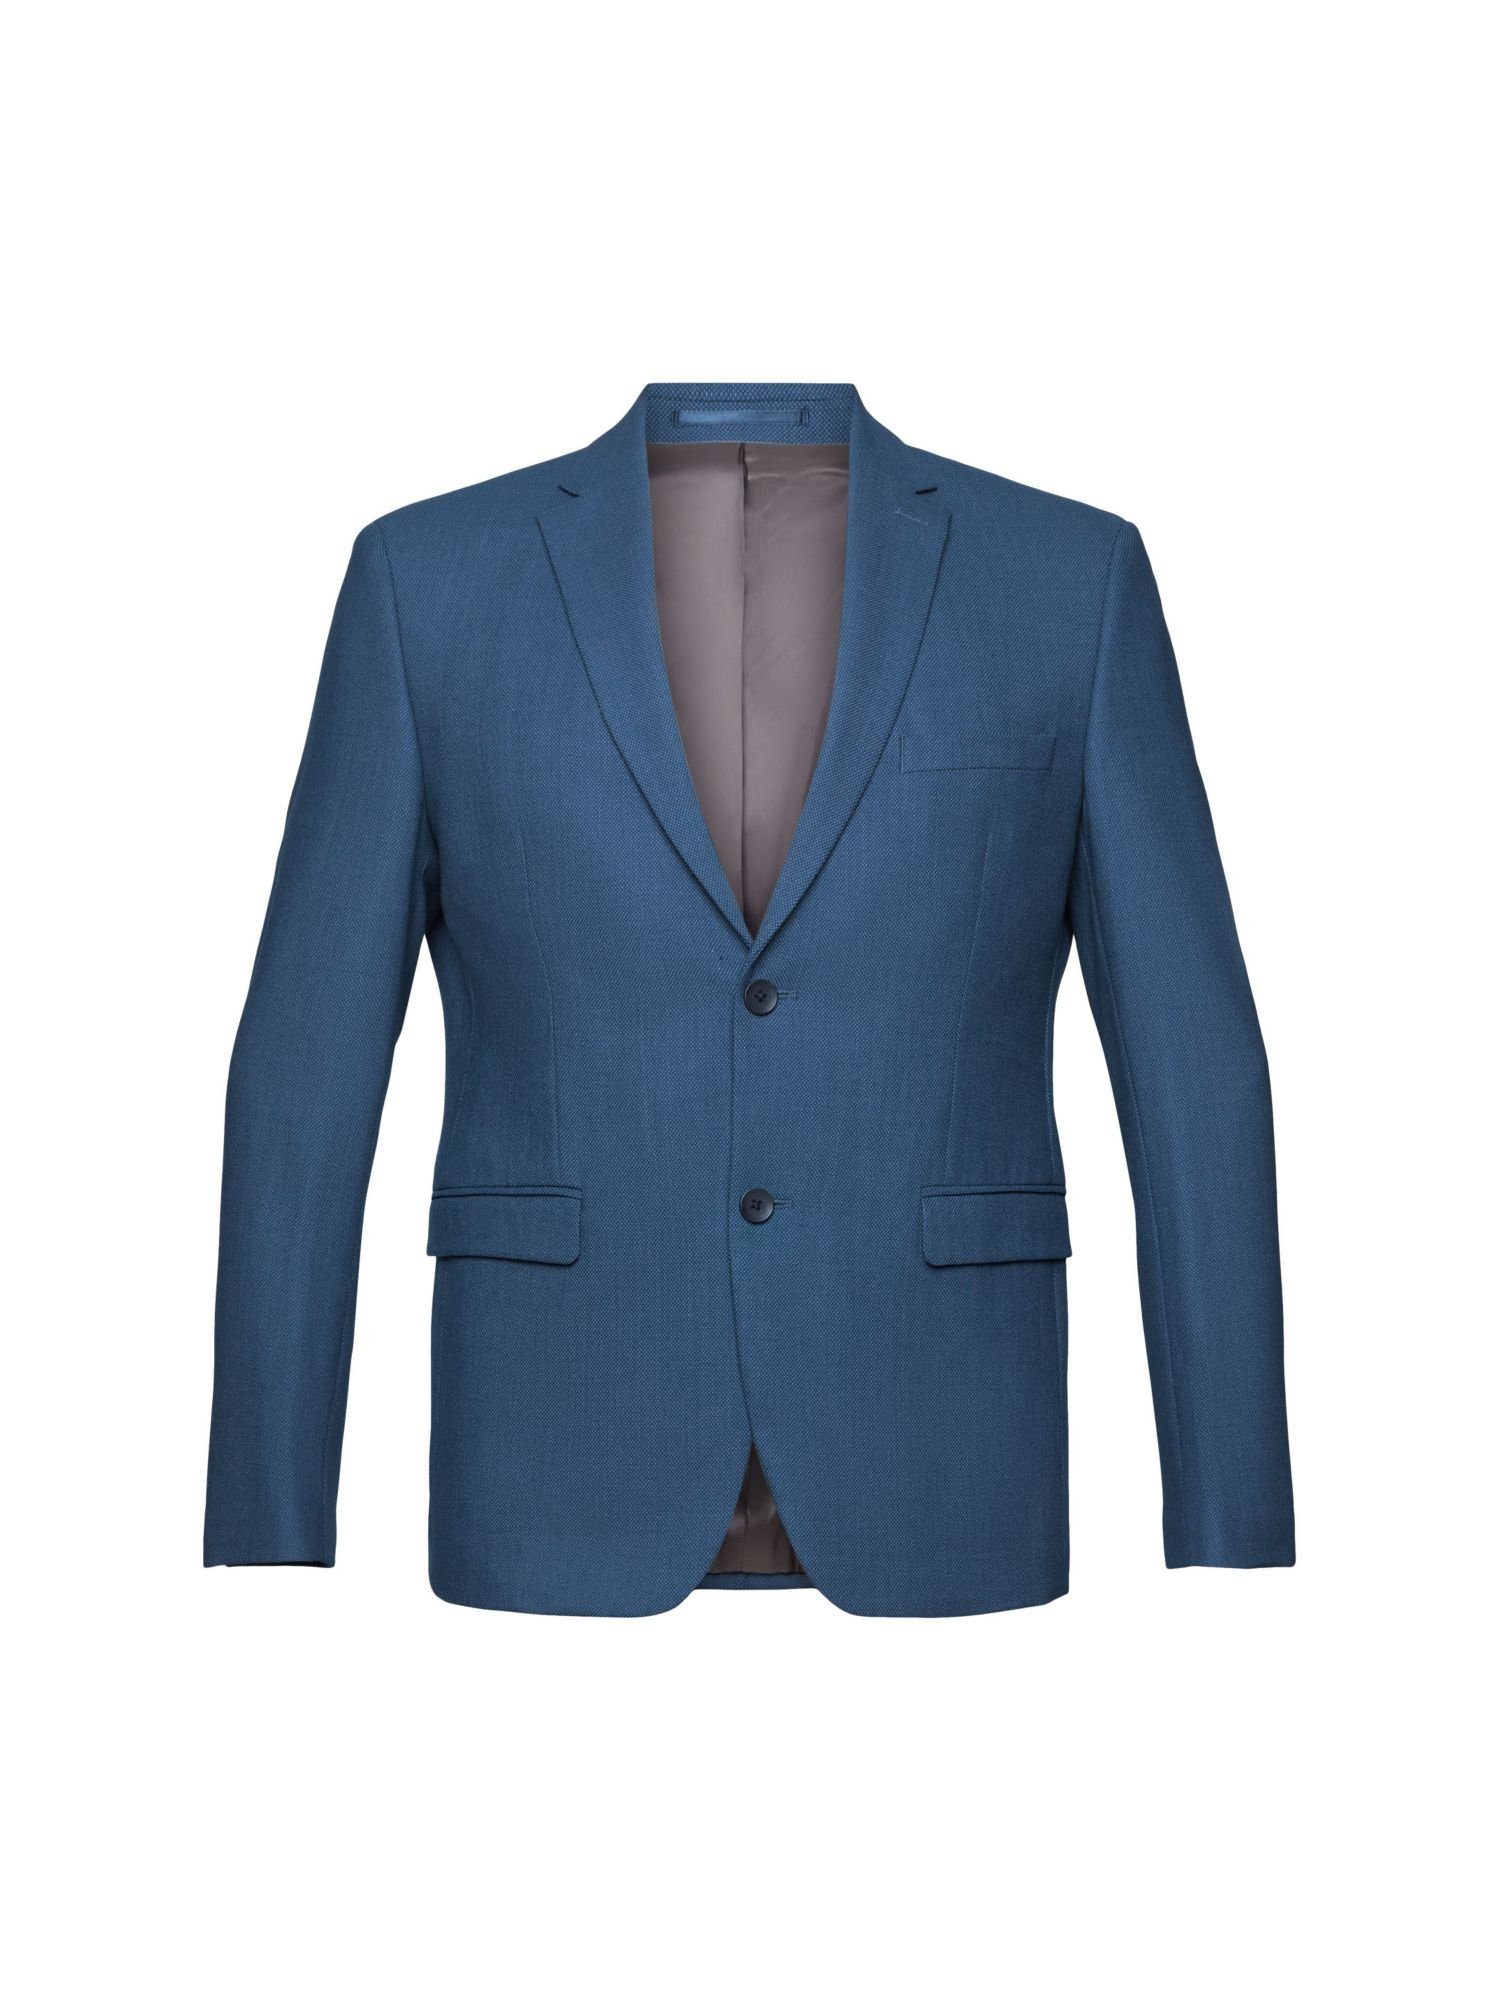 Esprit Collection Anzugsakko Mix & Match: Blazer mit Birdseye-Muster BLUE